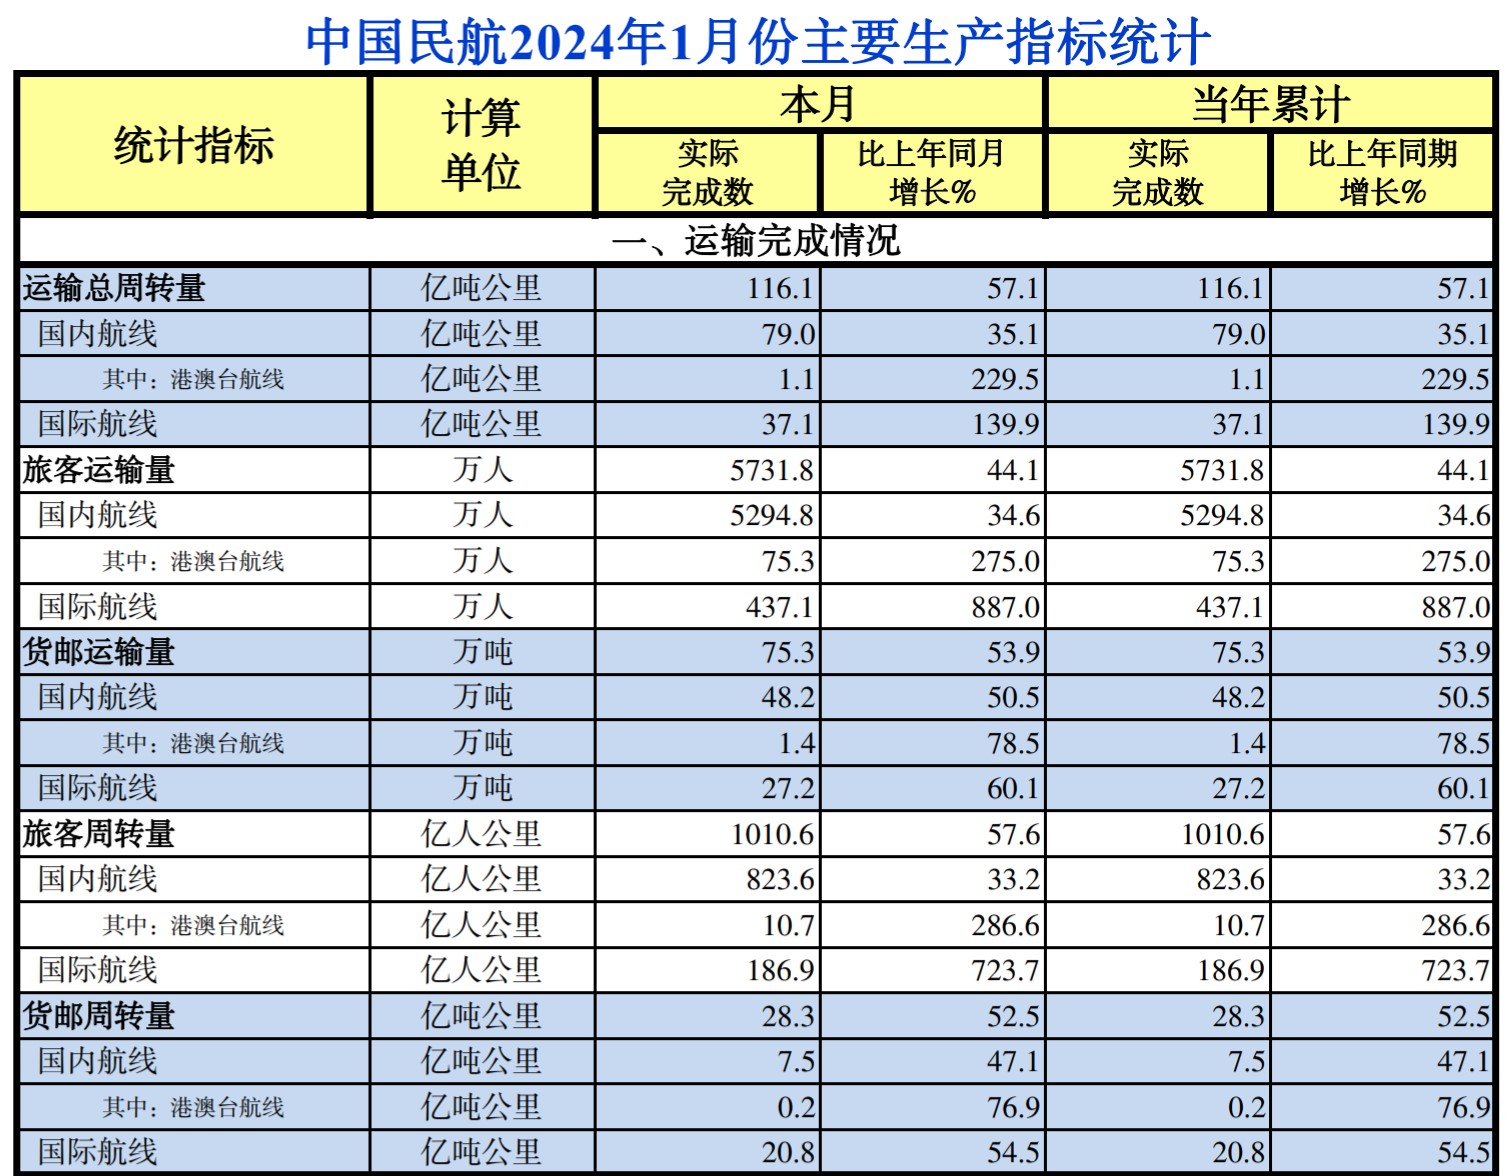 中国民航2024年1月份主要生产指标统计